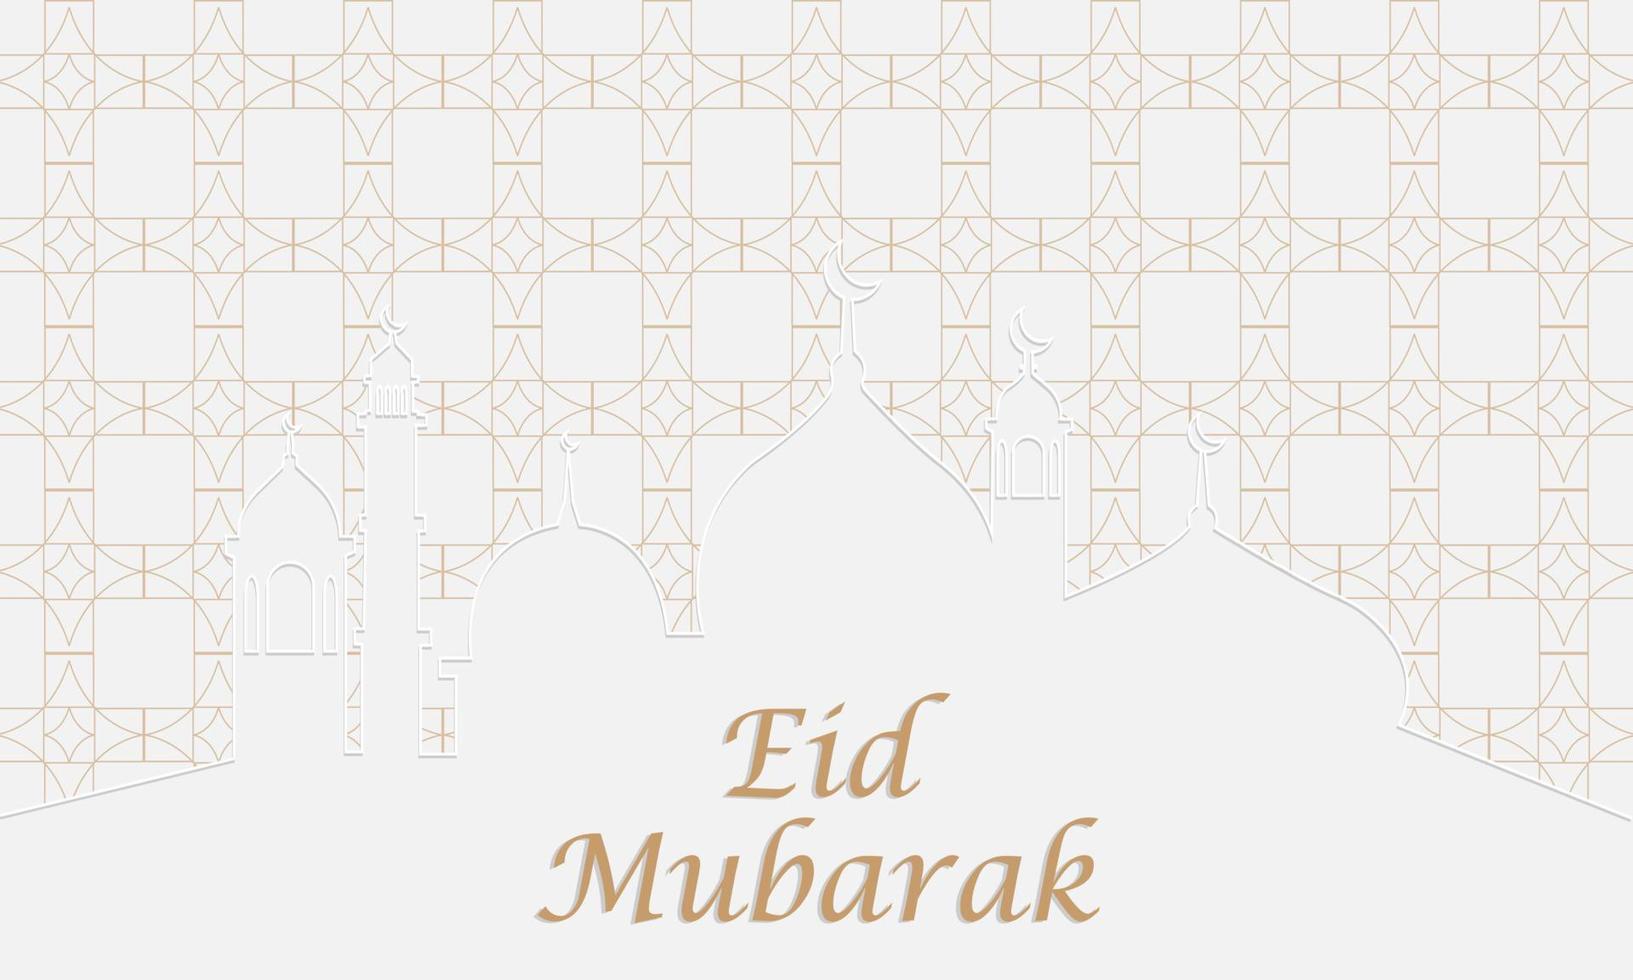 hermoso fondo de eid mubarak con diseño de gráficos vectoriales de patrón árabe vector premium